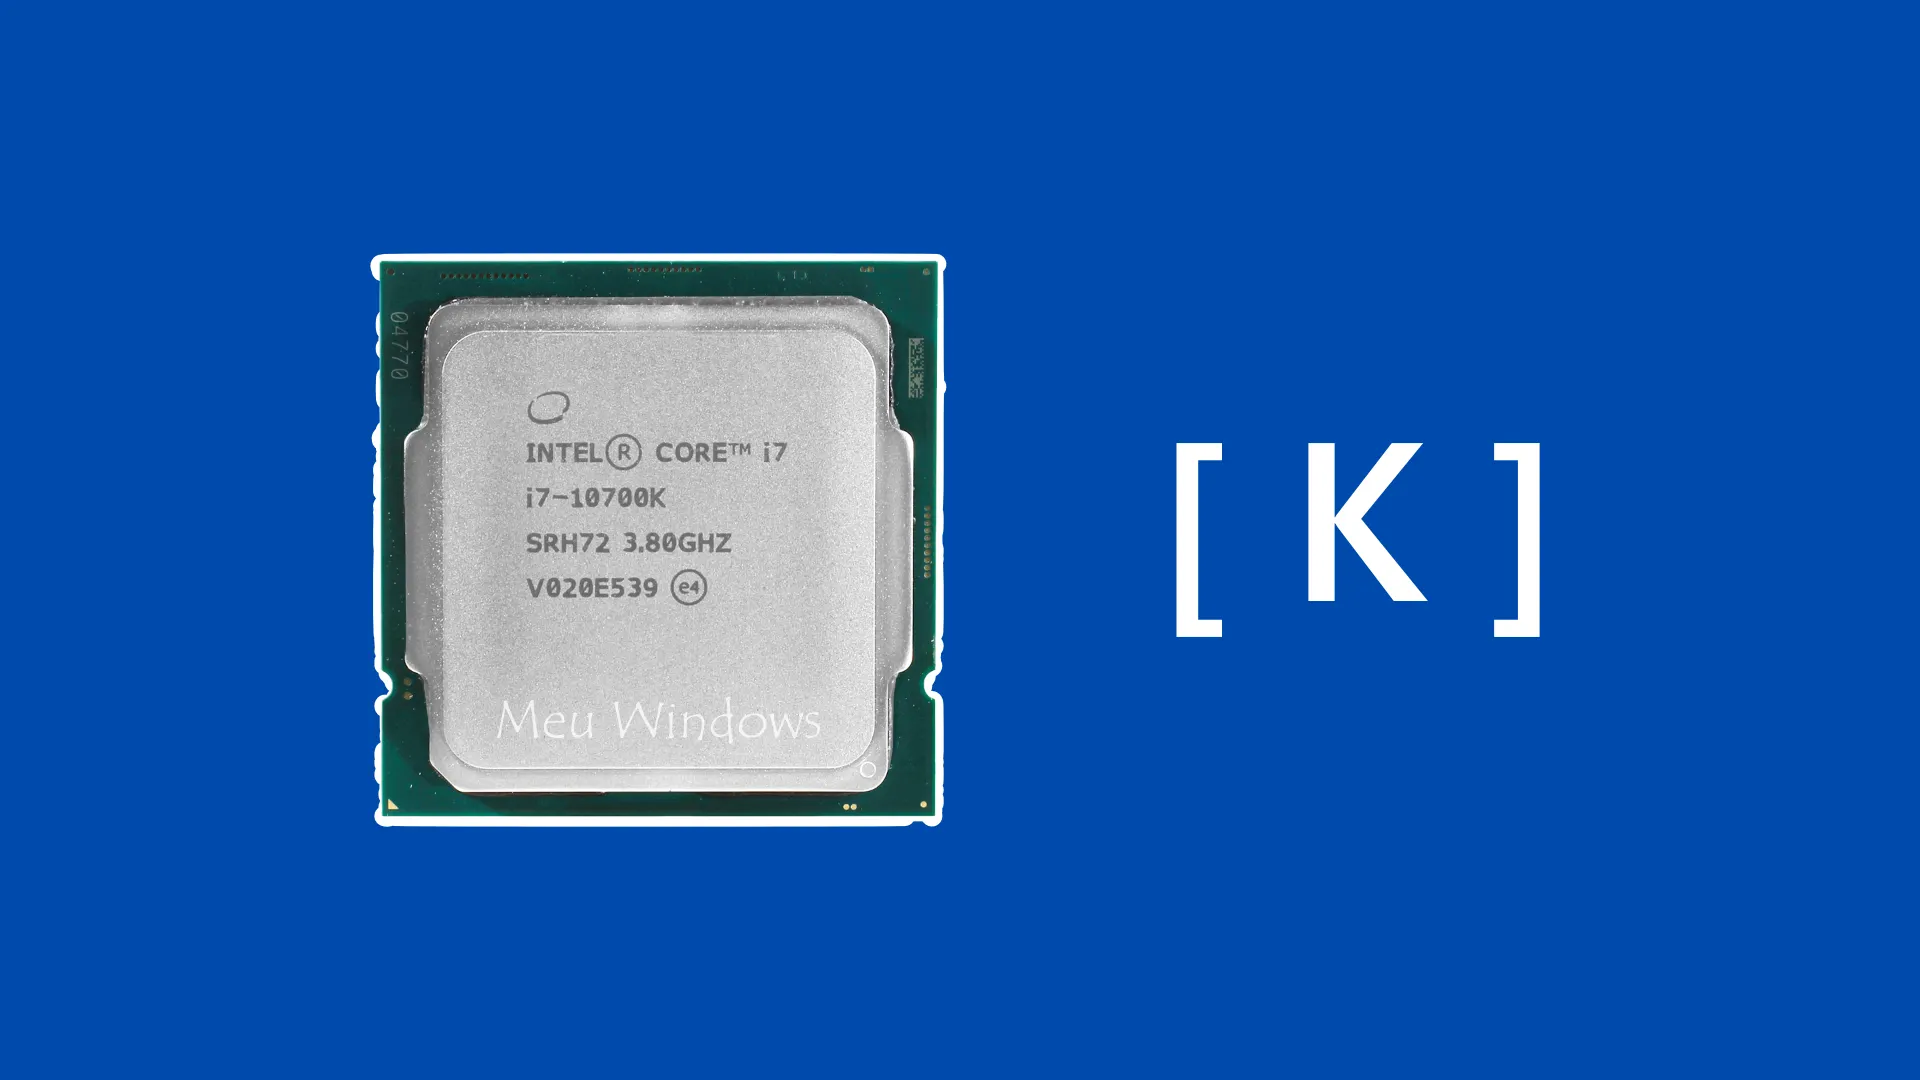 Significado da letra no final do modelo do processador Intel